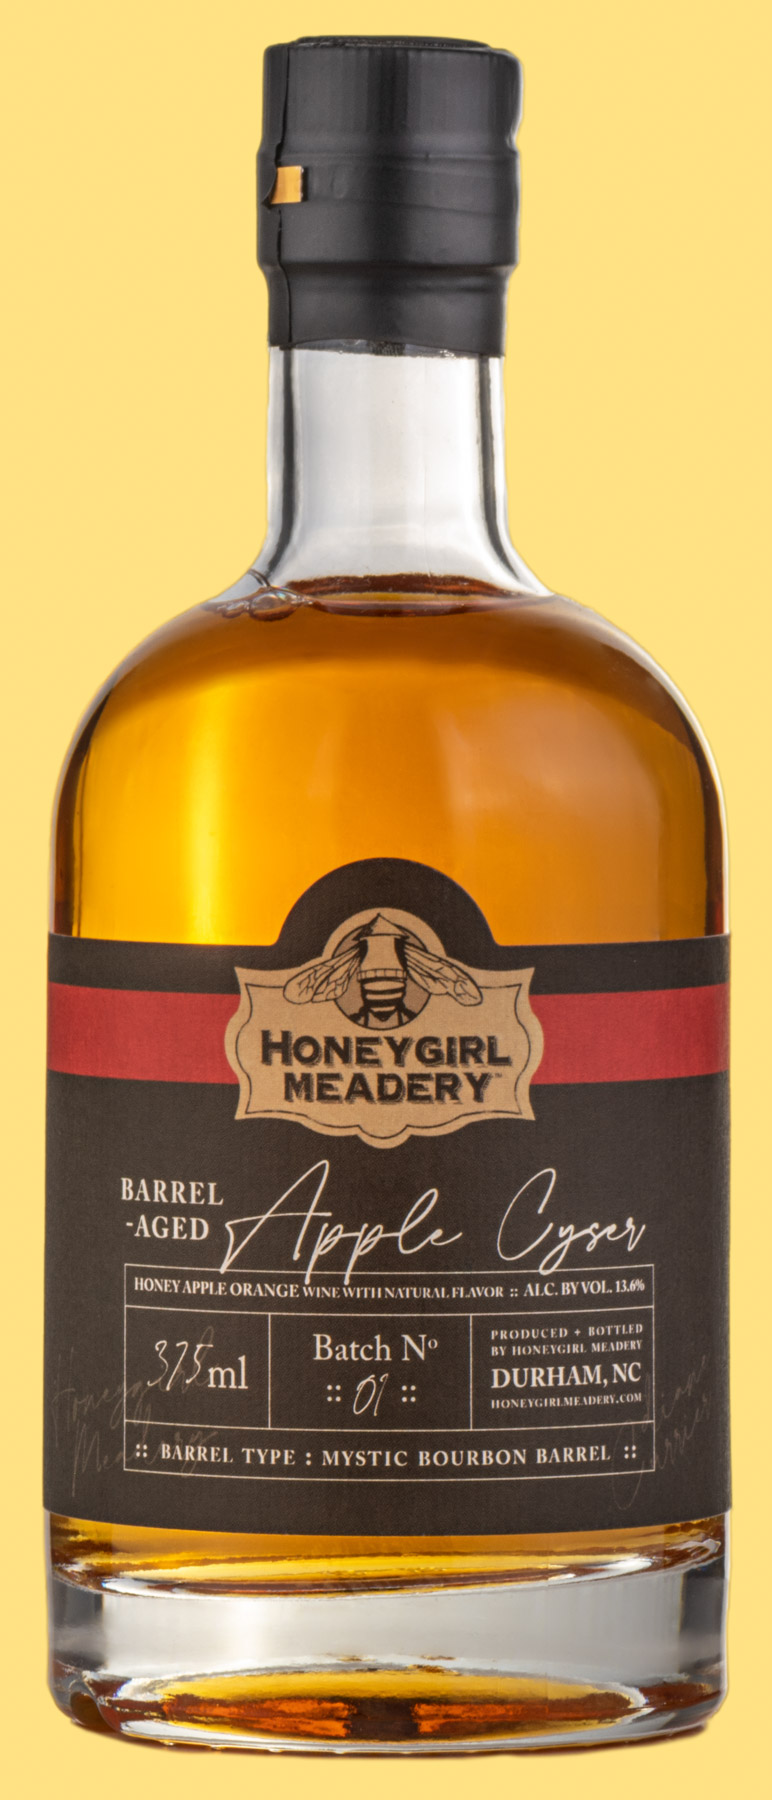 Barrel-Aged Apple Cyser Mead